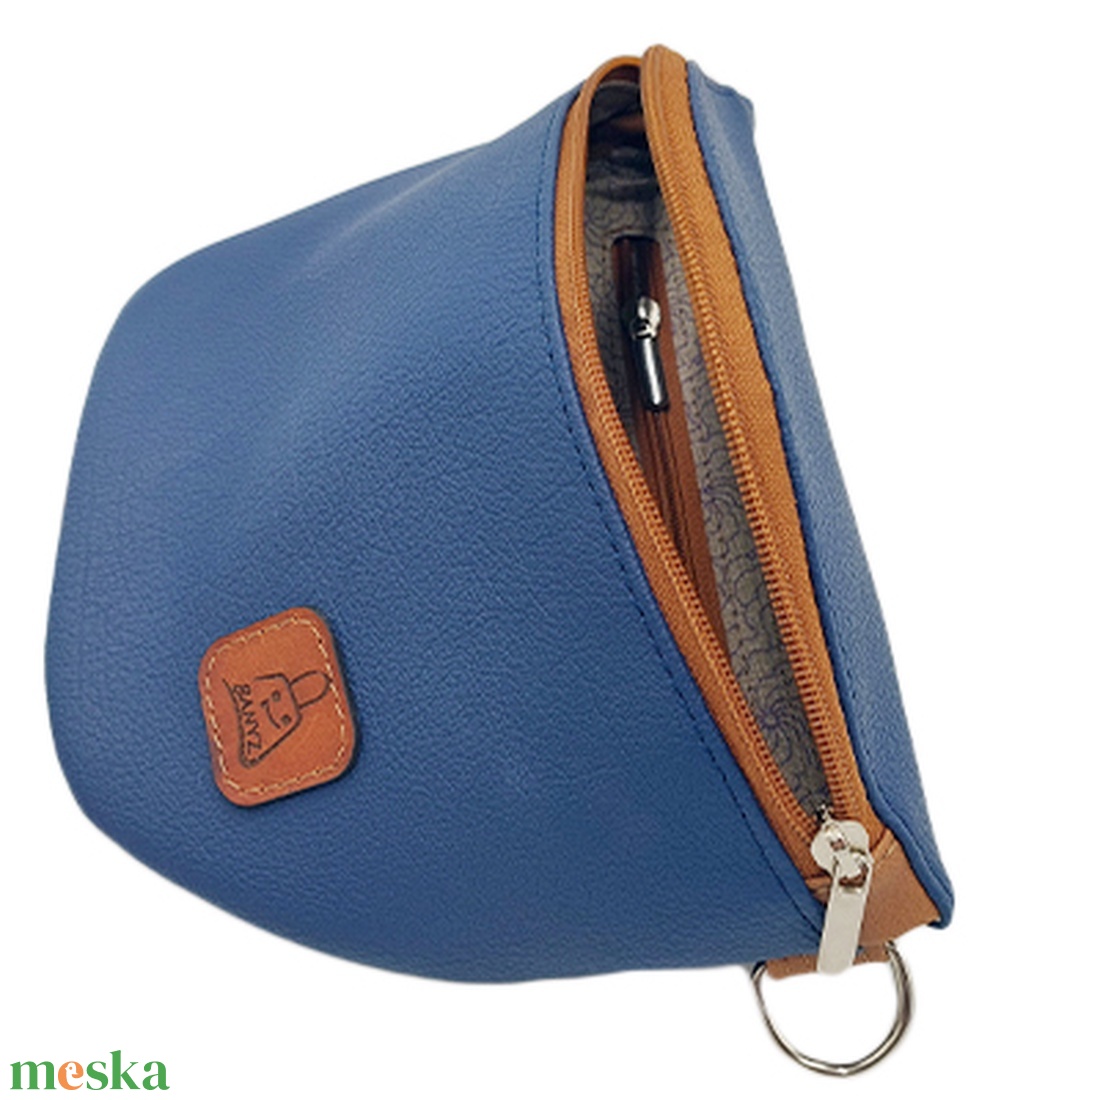 Keresztpántos táska, övtáska, kék- barna - táska & tok - kézitáska & válltáska - vállon átvethető táska - Meska.hu